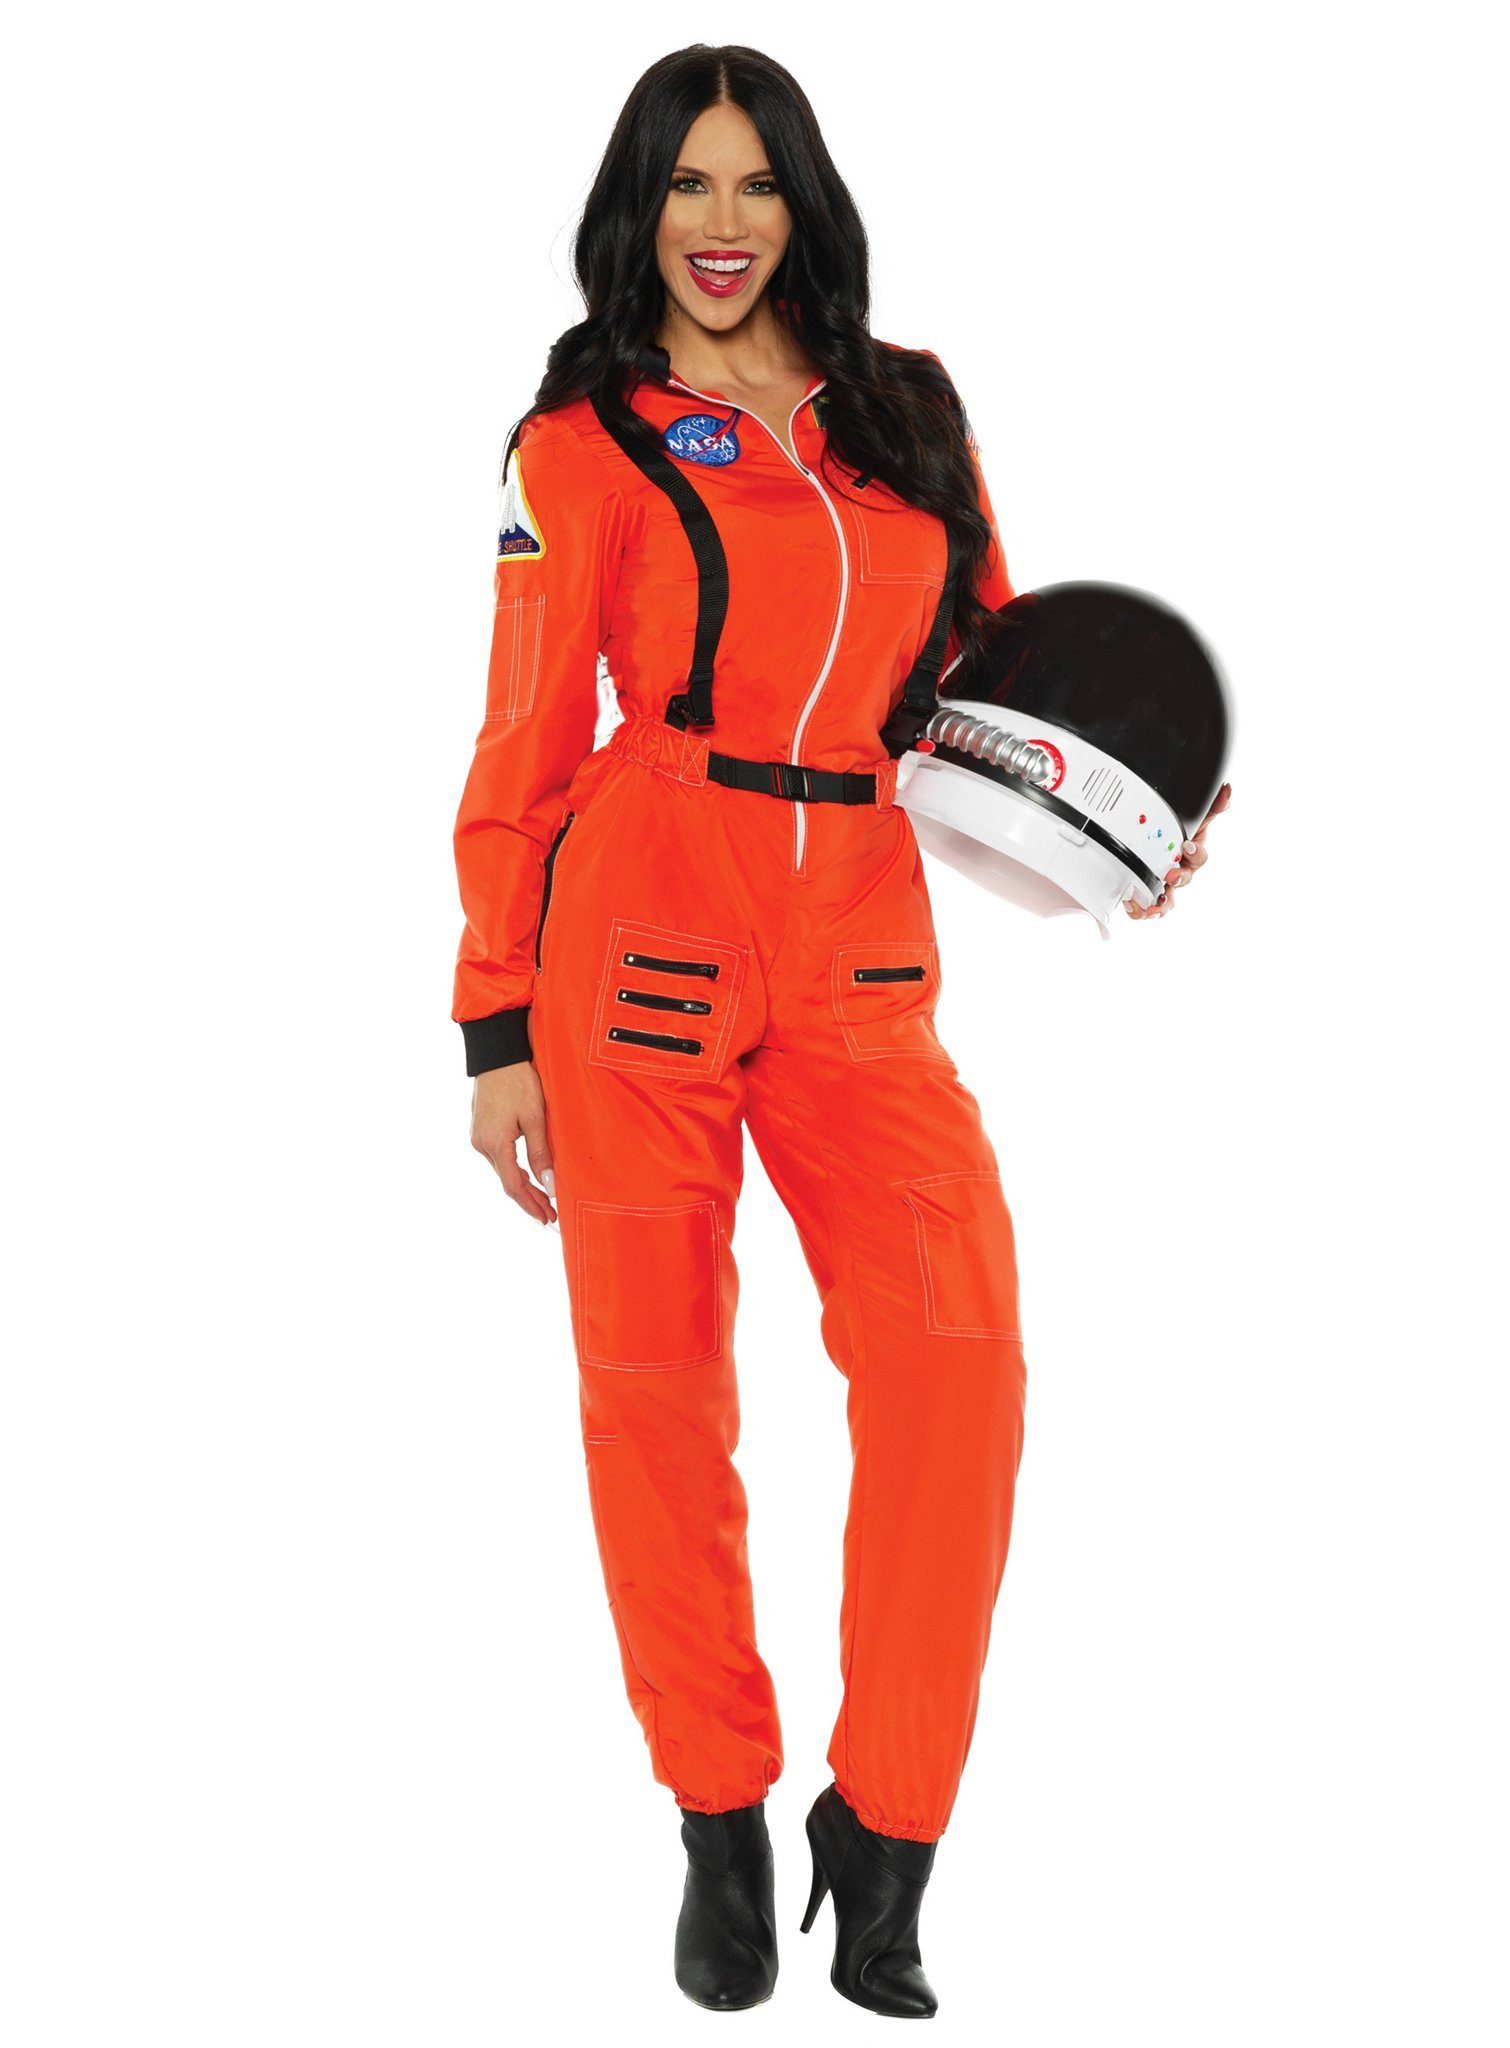 Underwraps Kostüm NASA Astronautin Kostüm orange, Gewappnet für die Schwerelosigkeit: Jumpsuit für die Raumfahrerin